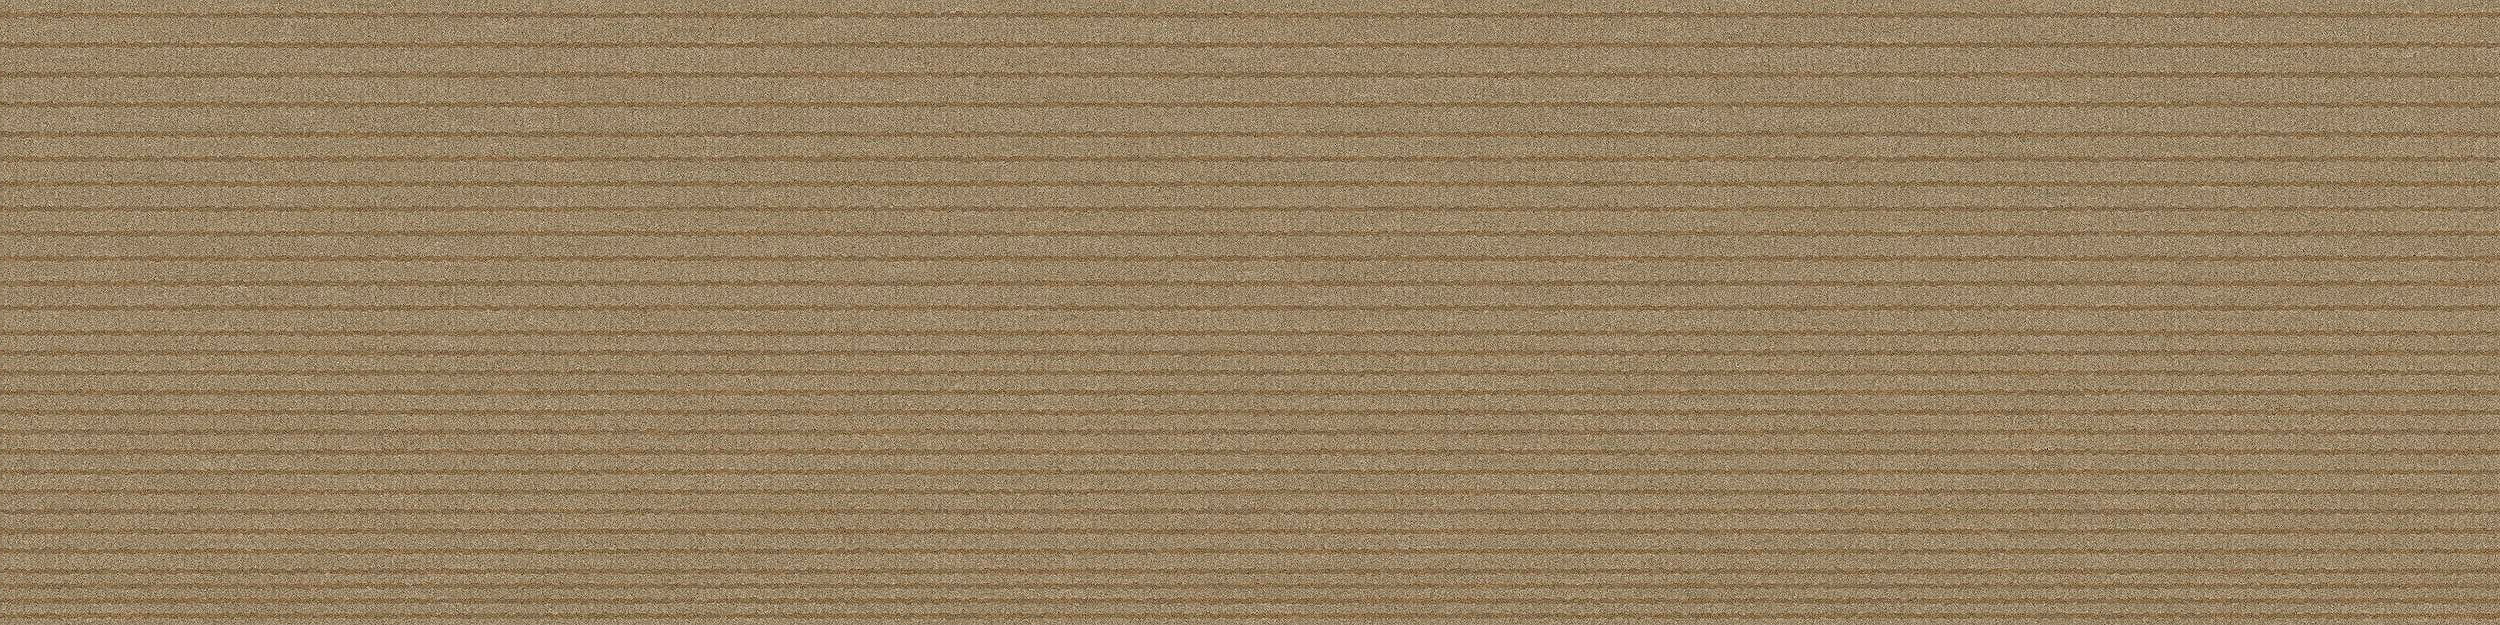 B703 Carpet Tile In Sand image number 8